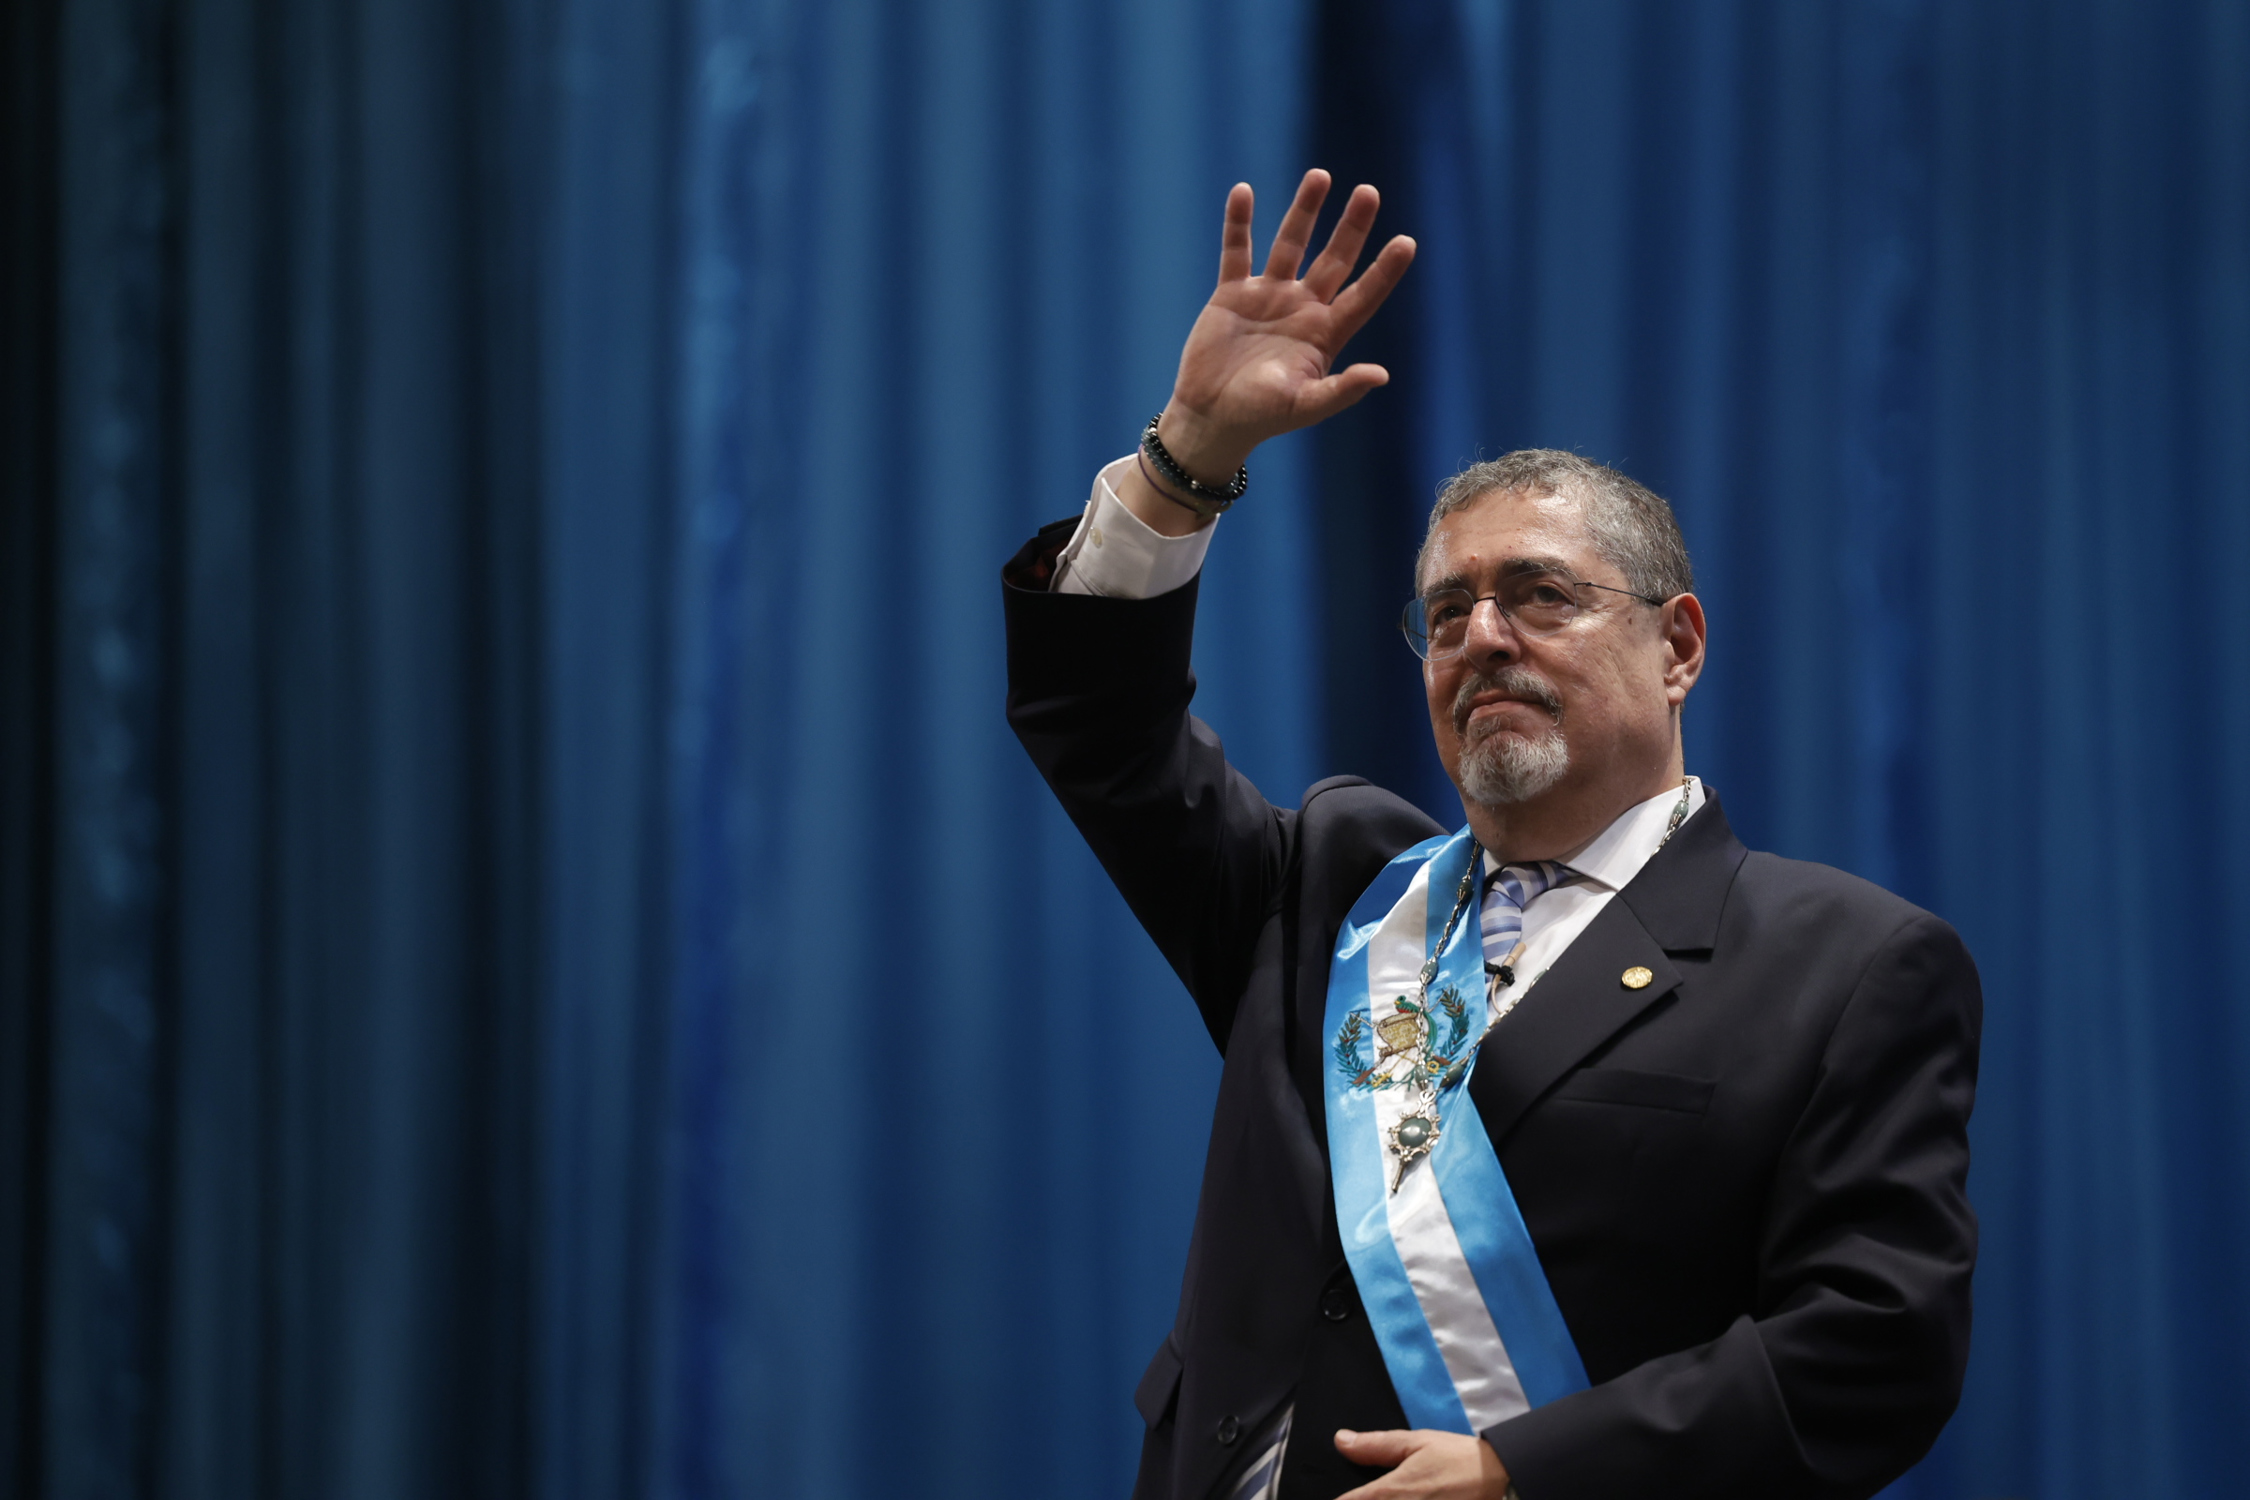 Arévalo ja és president de Guatemala després d'hores de caos i intents de torpedinar la investidura